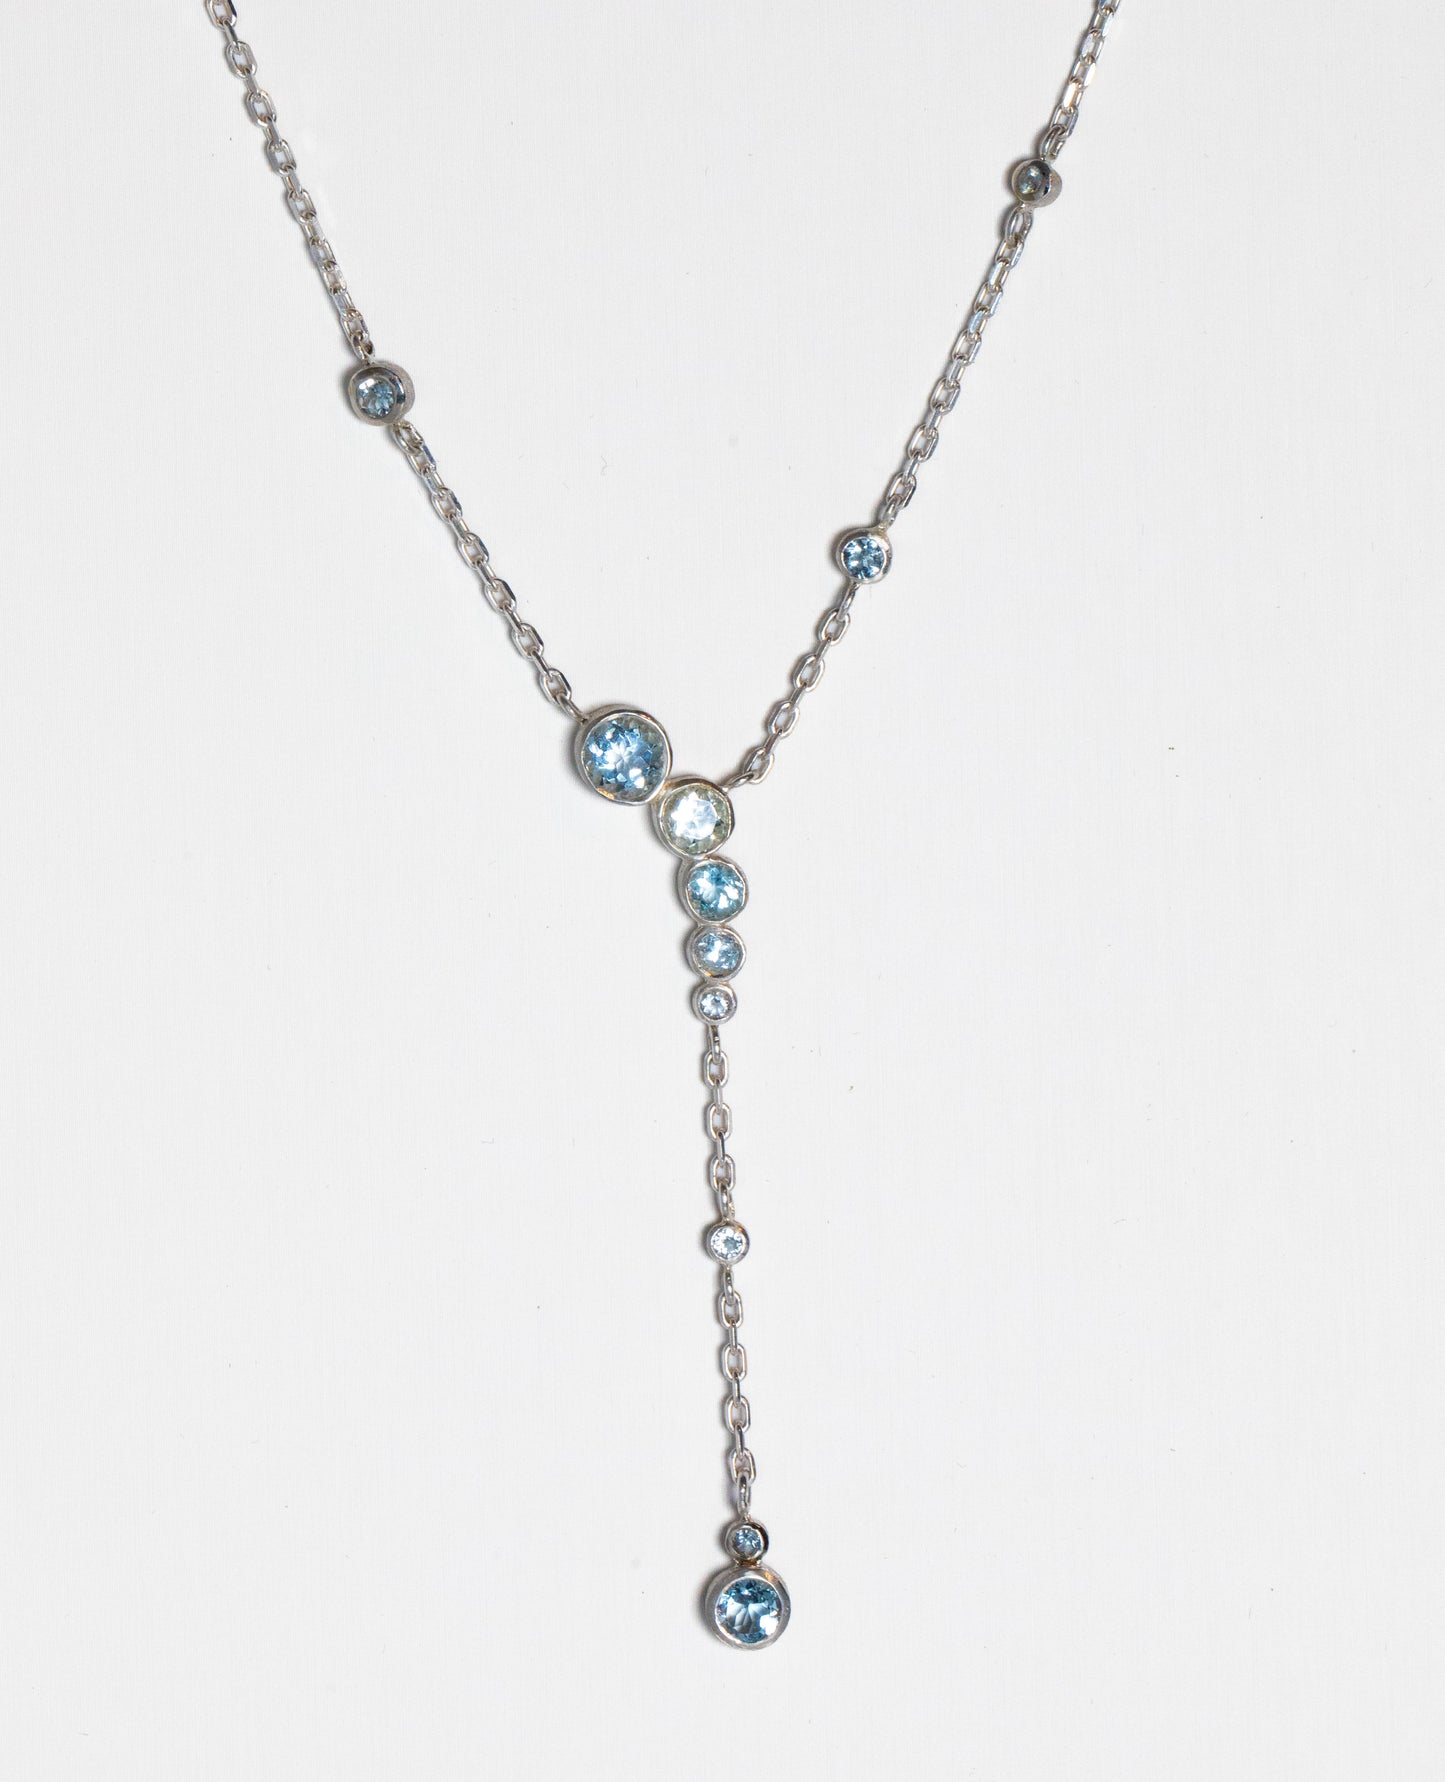 plunging aquamarine necklace on white background